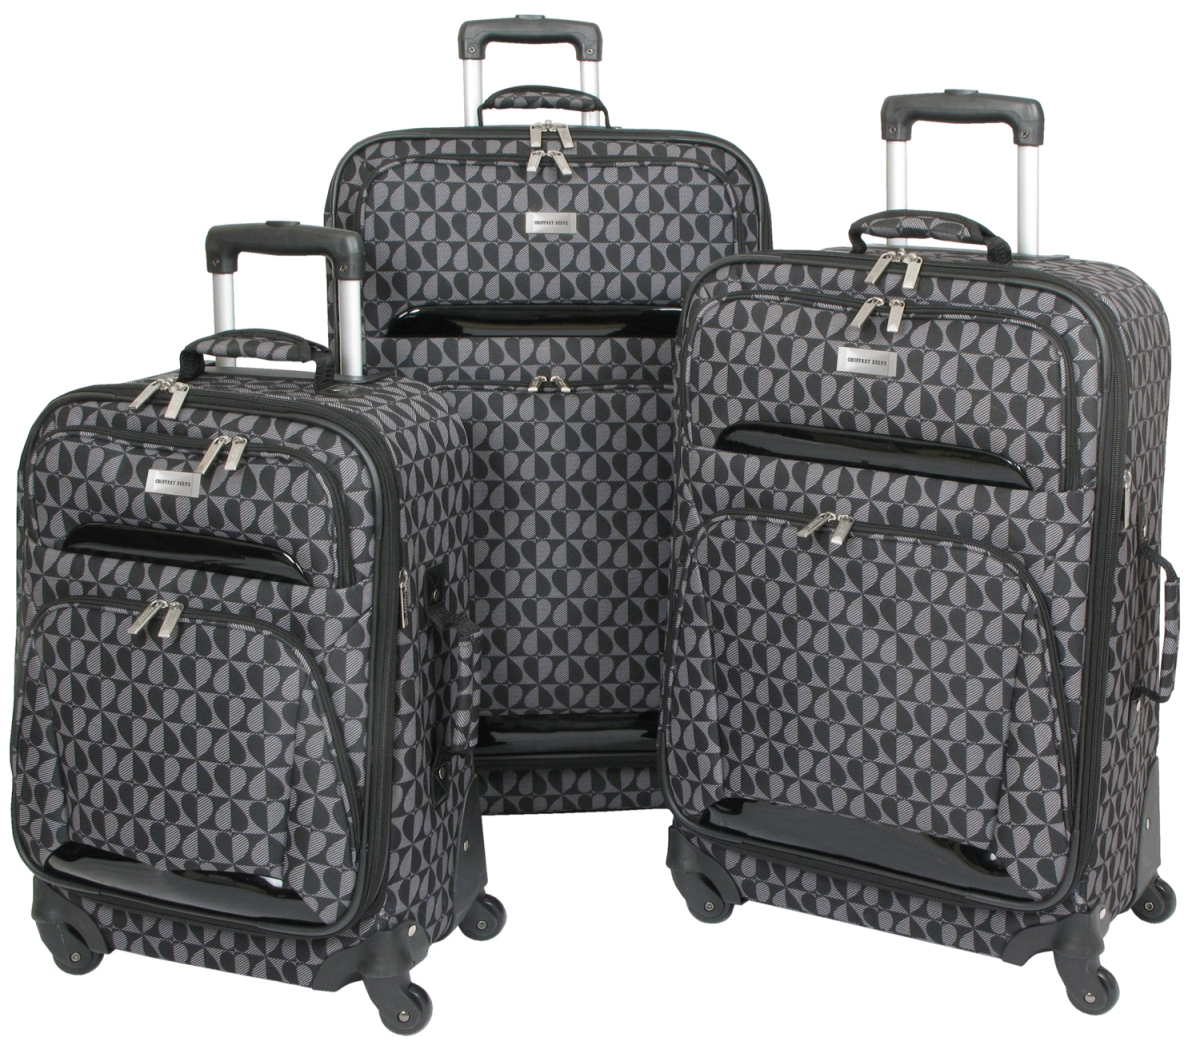 Gb766-3 Heart Fashion Luggage Set - Black & Grey, 3 Piece